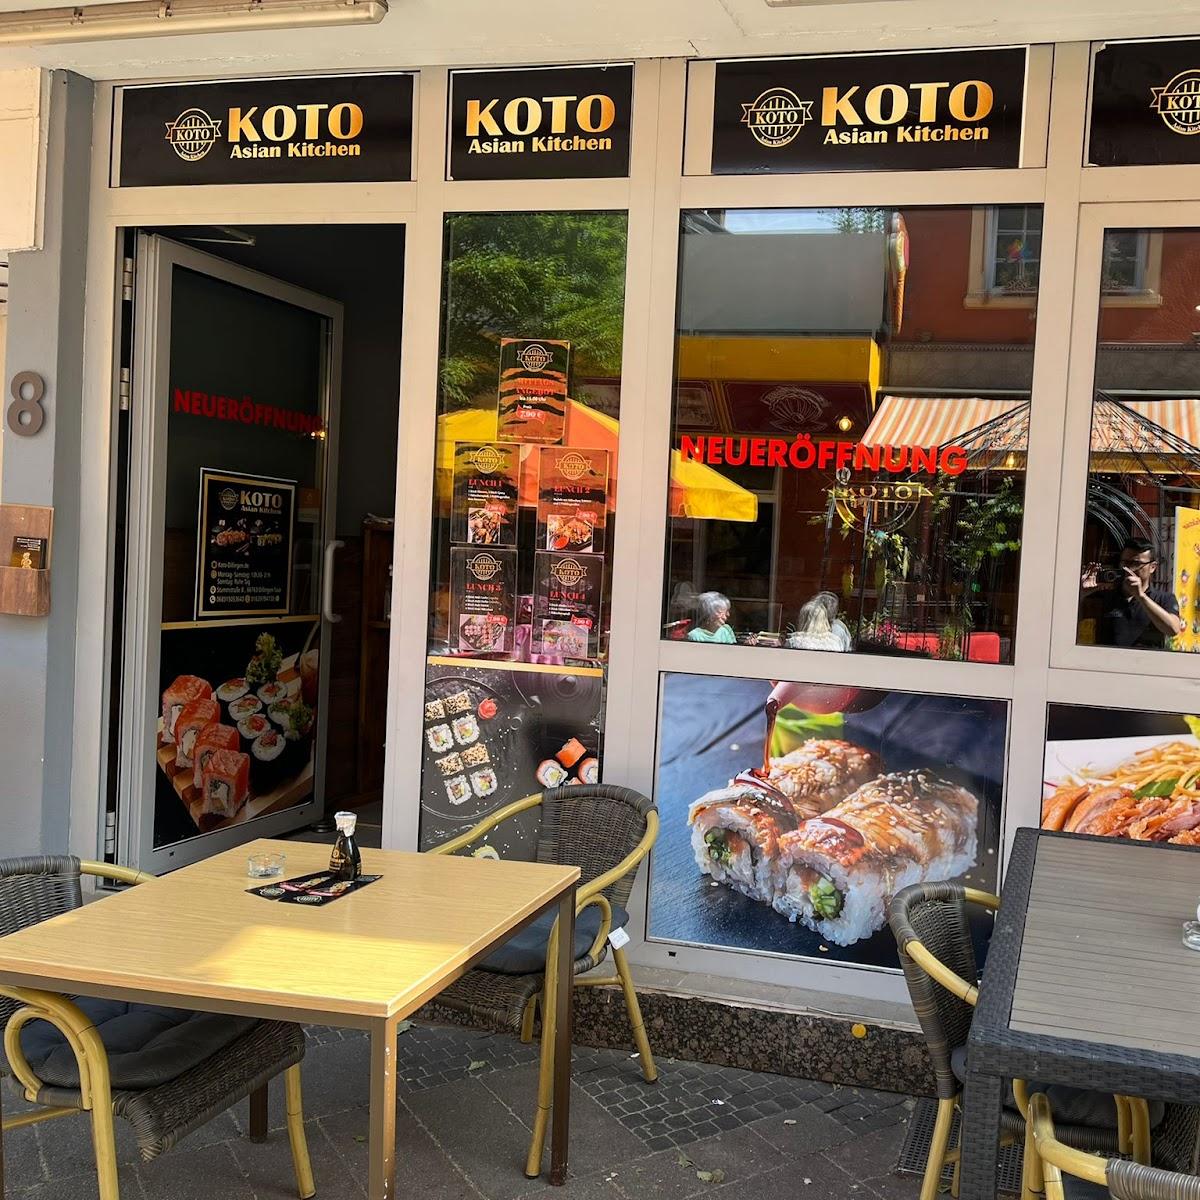 Restaurant "KOTO Asian Kitchen - Sushi Dillingen (Saar)" in Dillingen-Saar